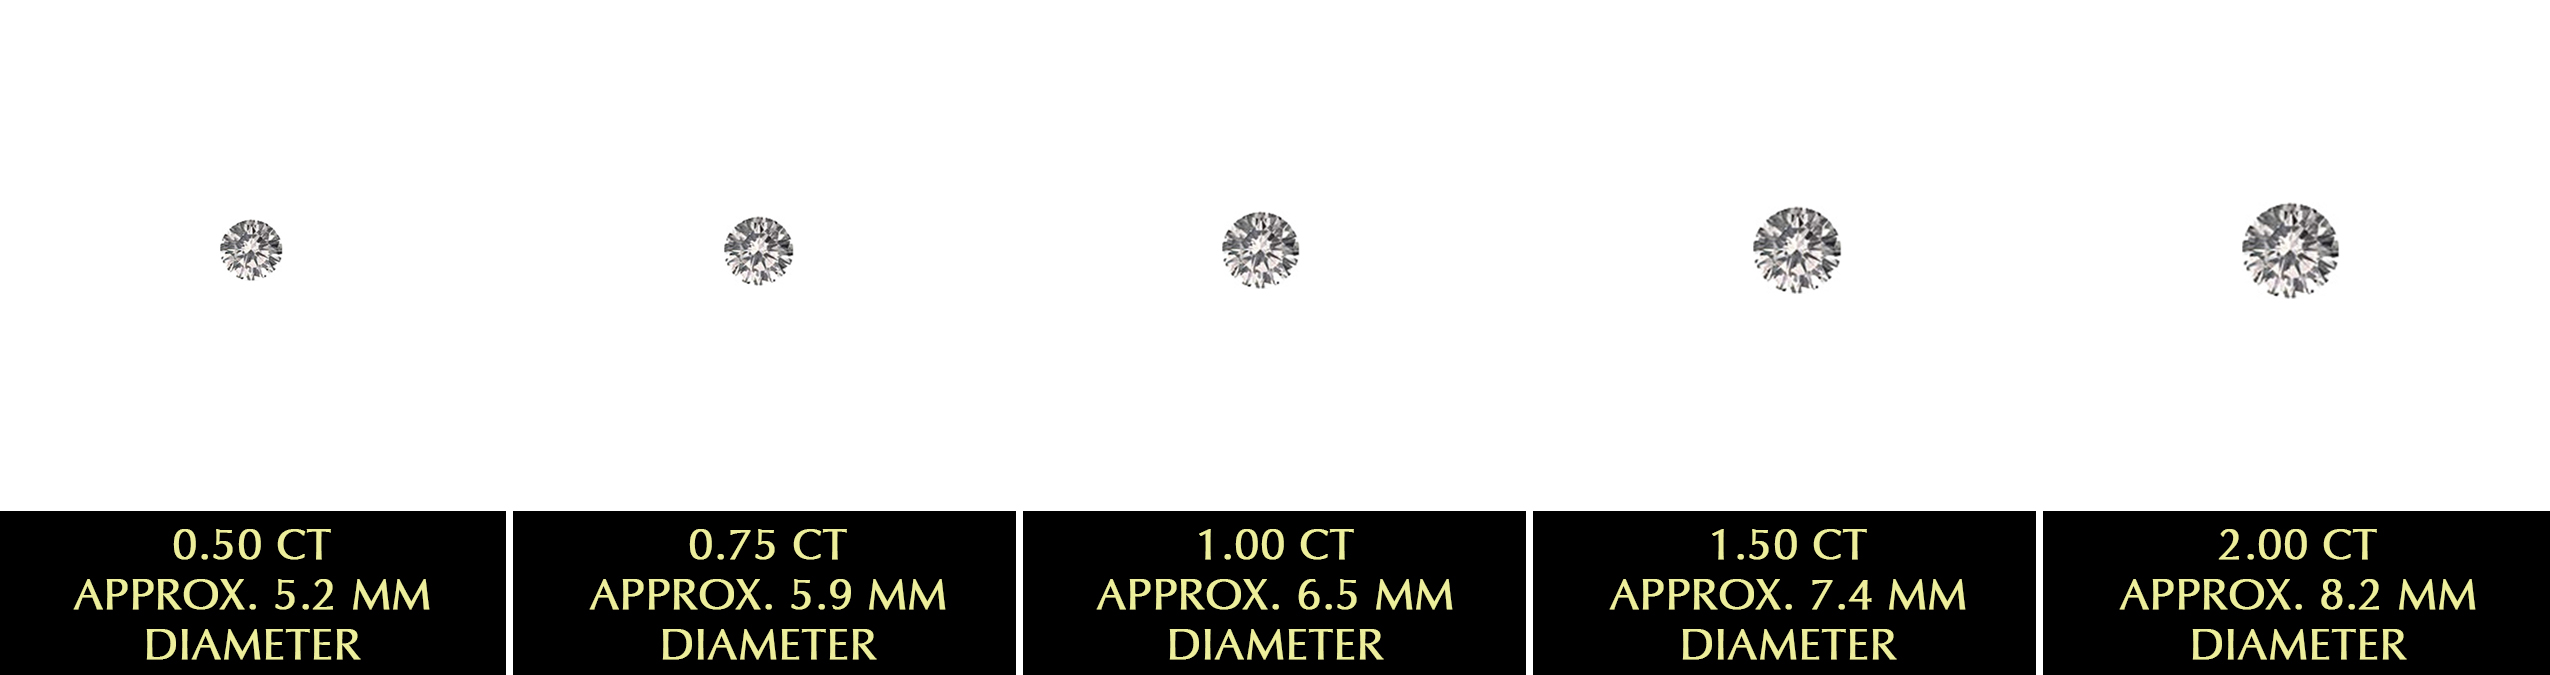 Carat_Size_-_diamonds